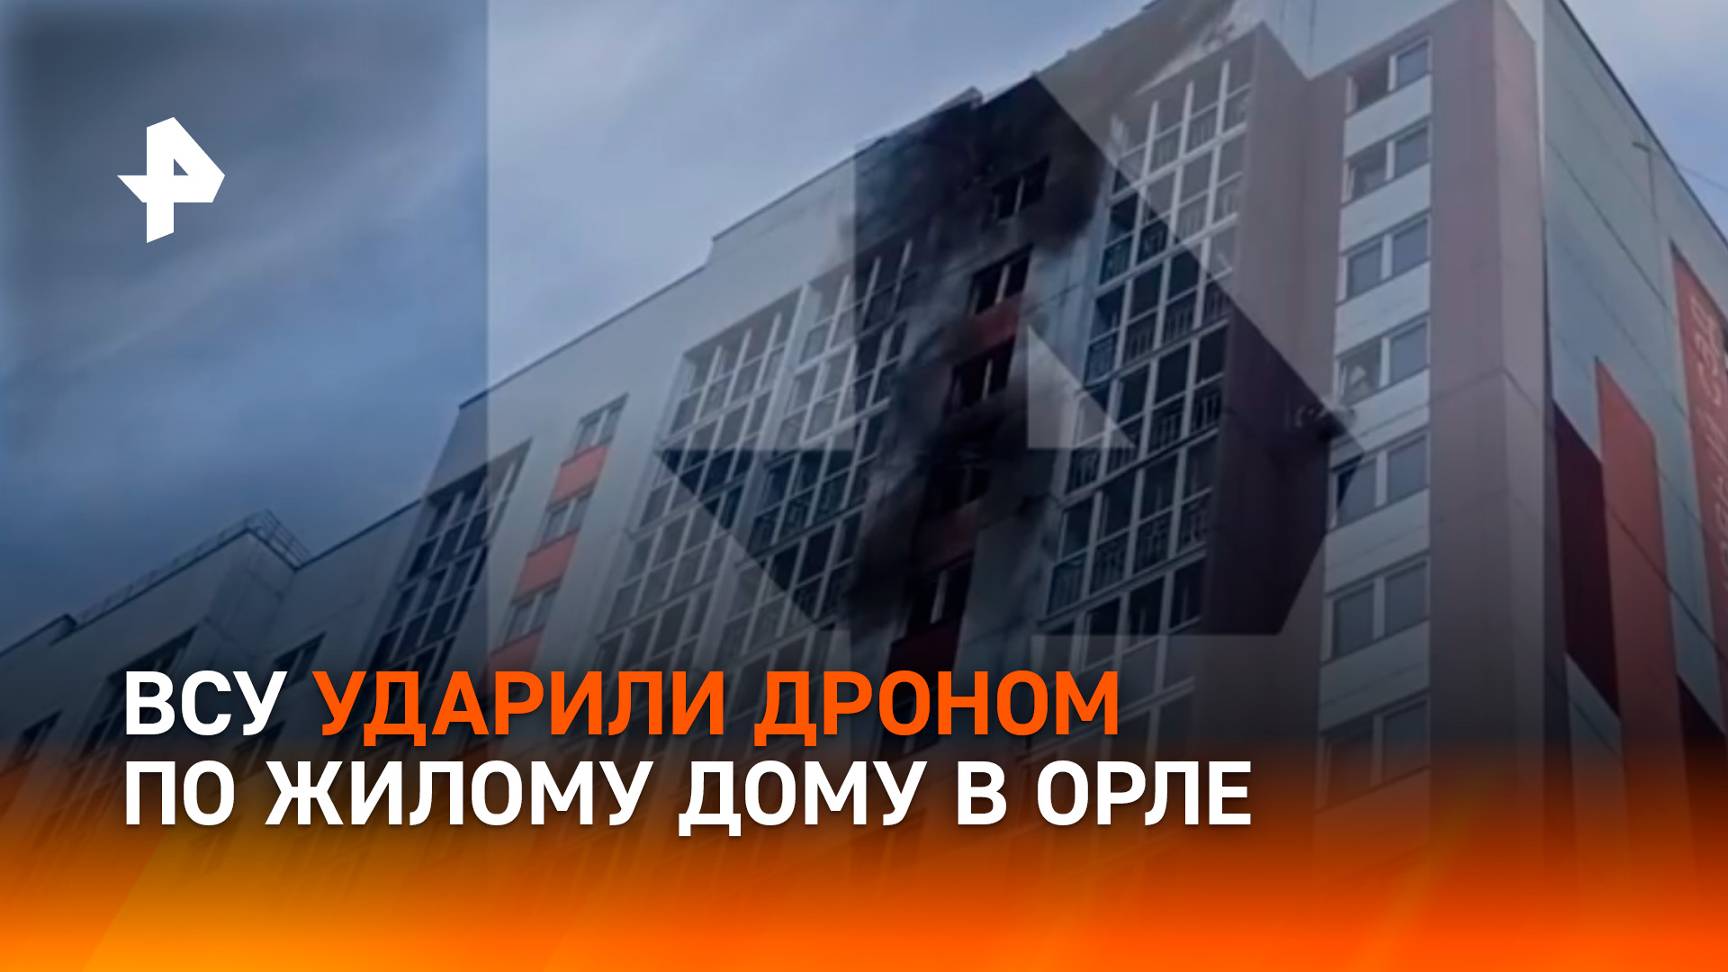 Атака ВСУ дроном повредила жилой дом в Орле / РЕН Новости